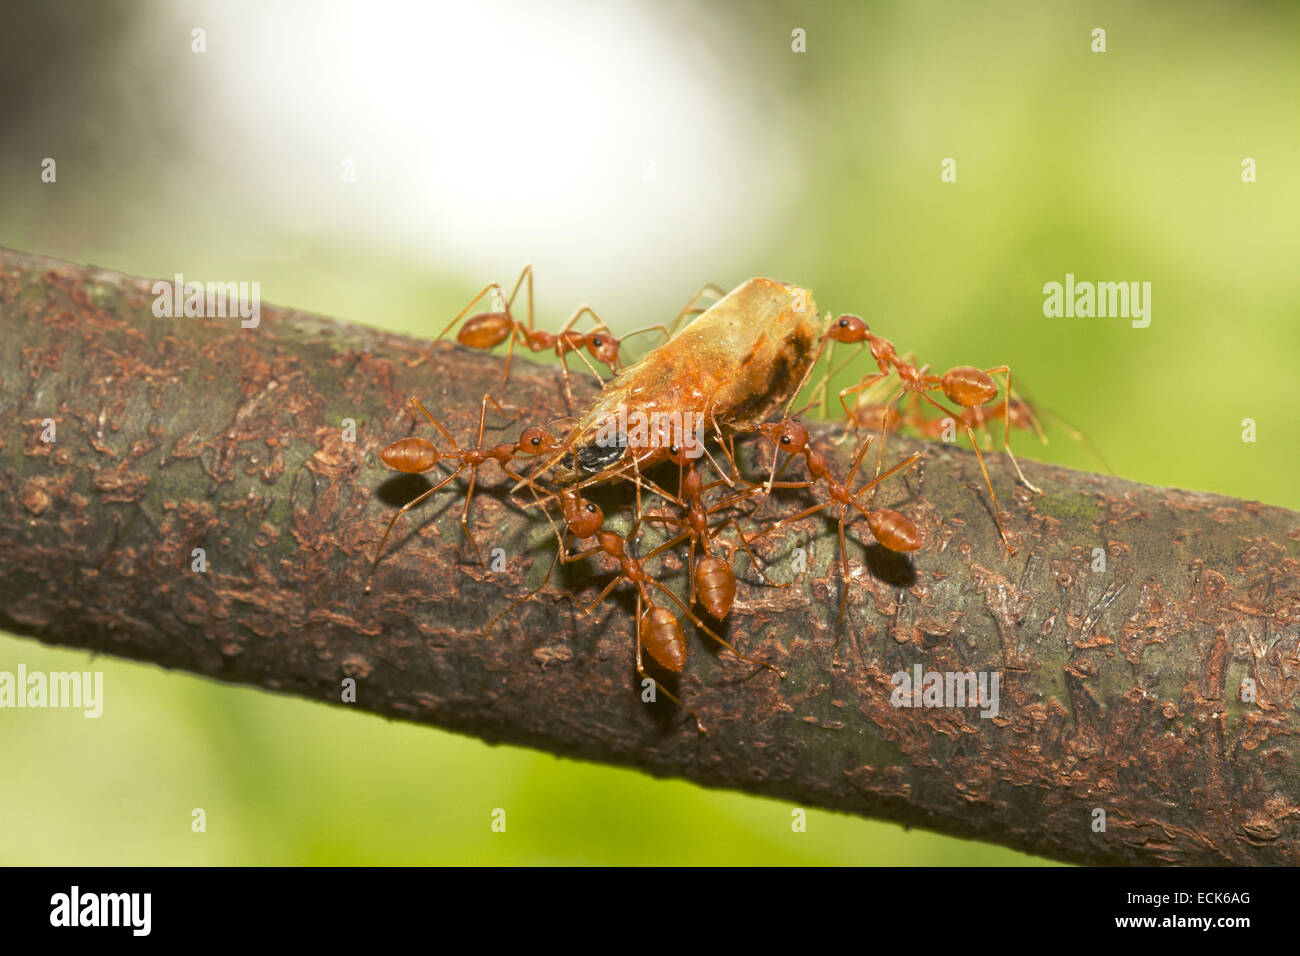 Asiatische Weberameisen manövrieren mit getrockneten Shrimps Kopf. Dies sind Fleischfresser Ameisen. Gattung Oecophylla Familie Ameisen Stockfoto